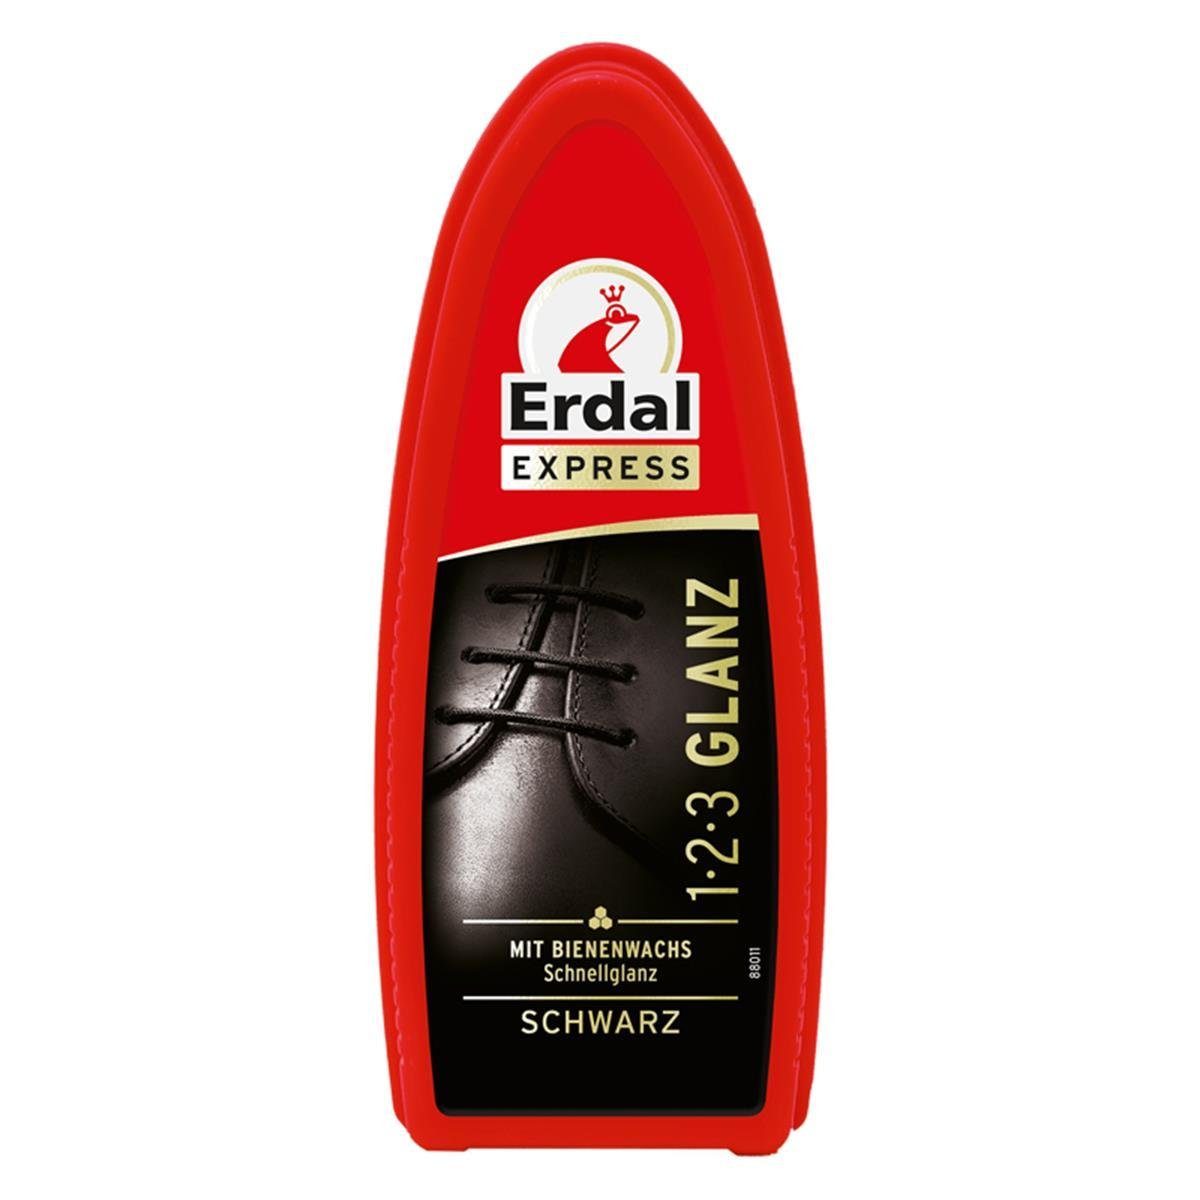 Erdal Erdal Express 1-2-3 Glanz Schwarz – Schwamm – mit Bienenwachs Reinigungstücher